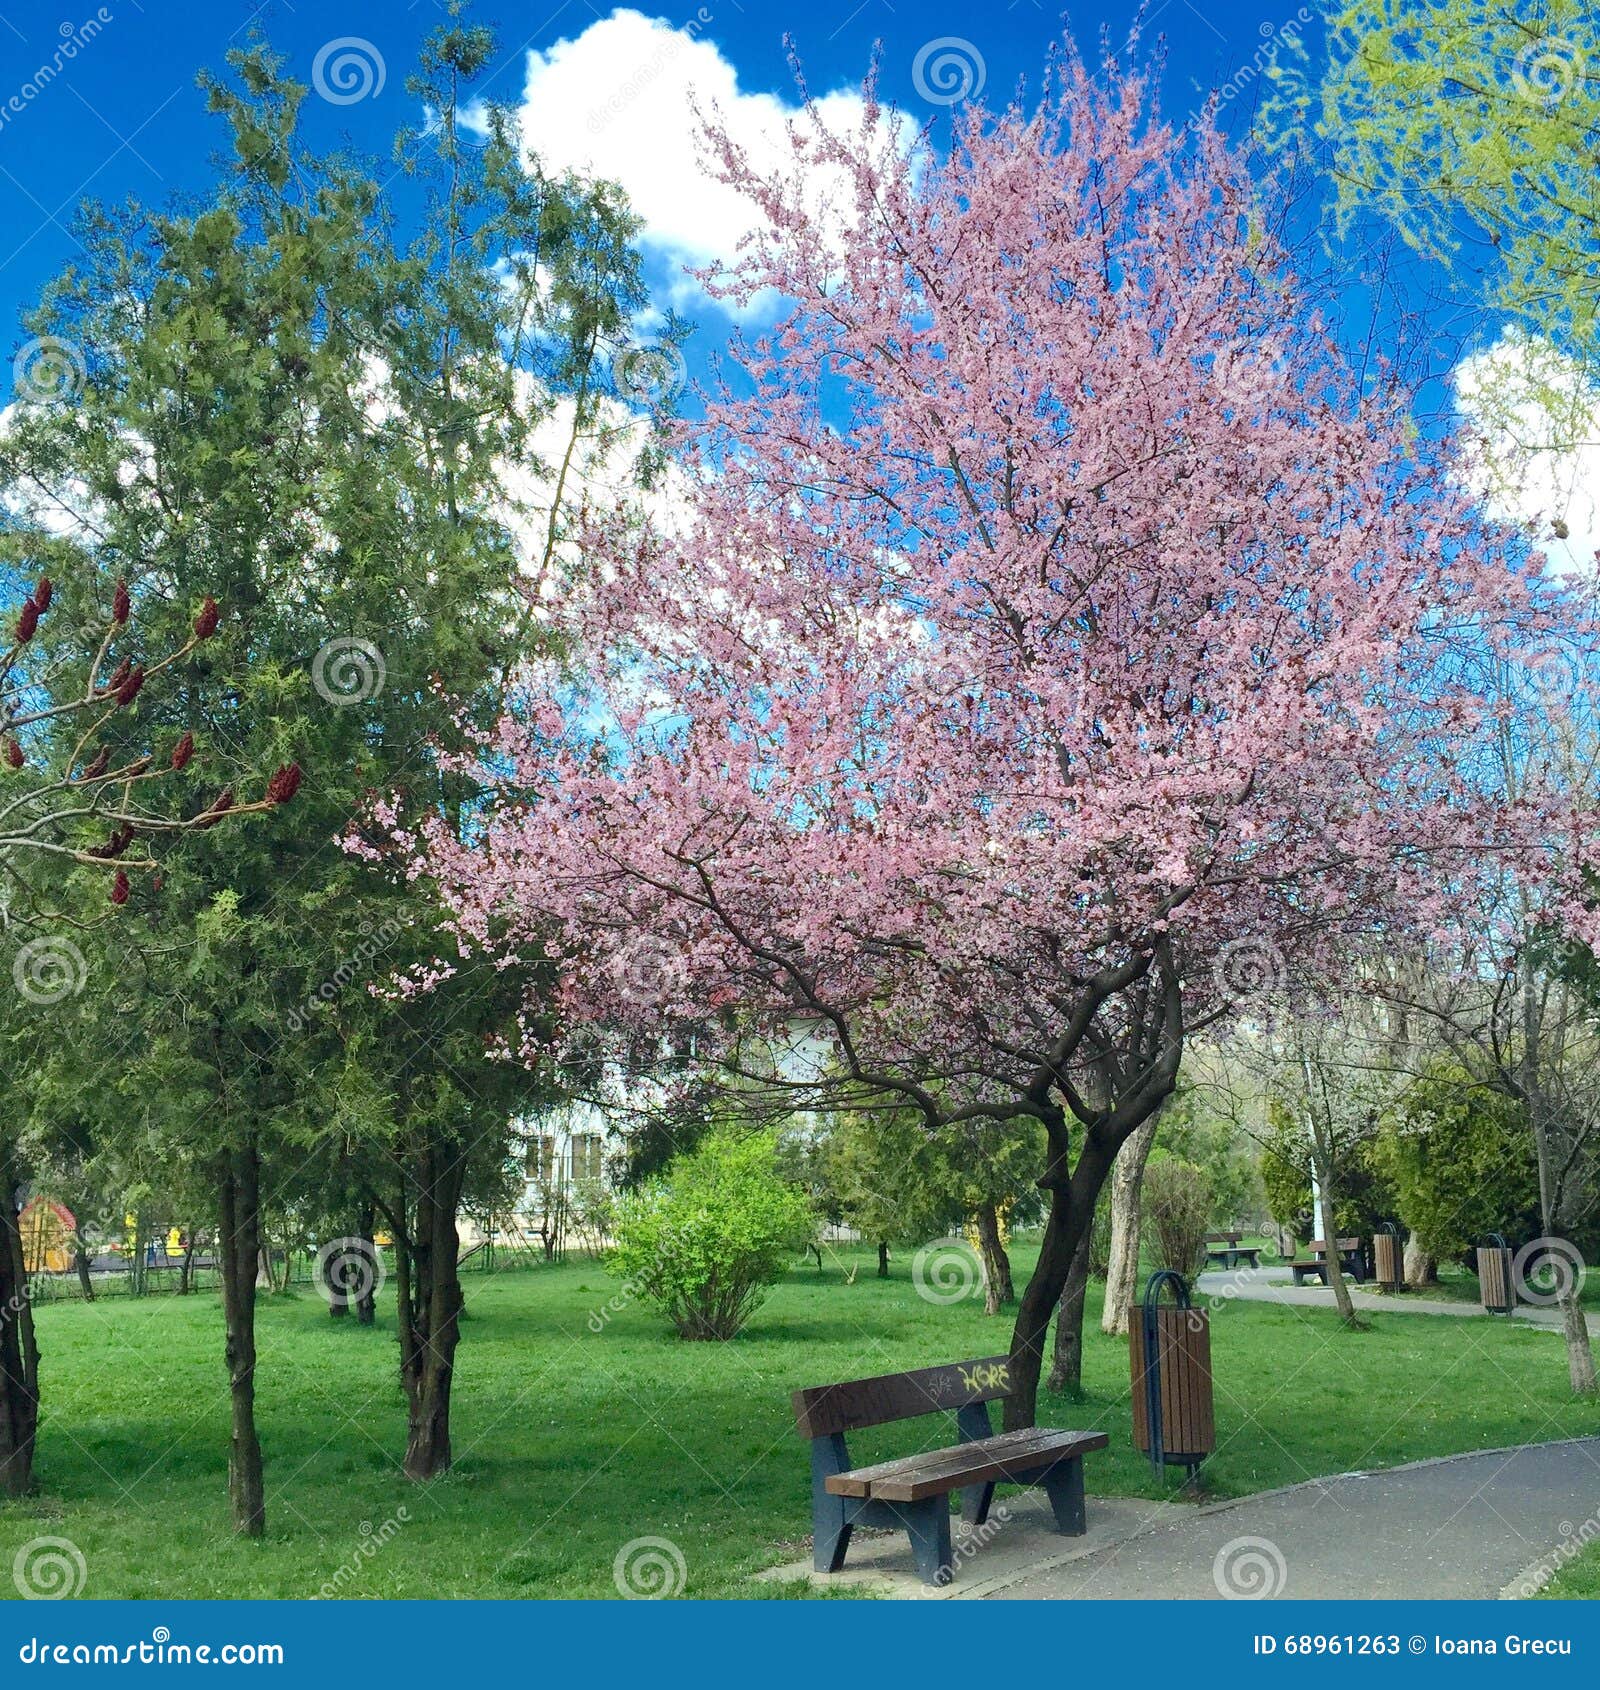 quite park bench under flowering cherry tree